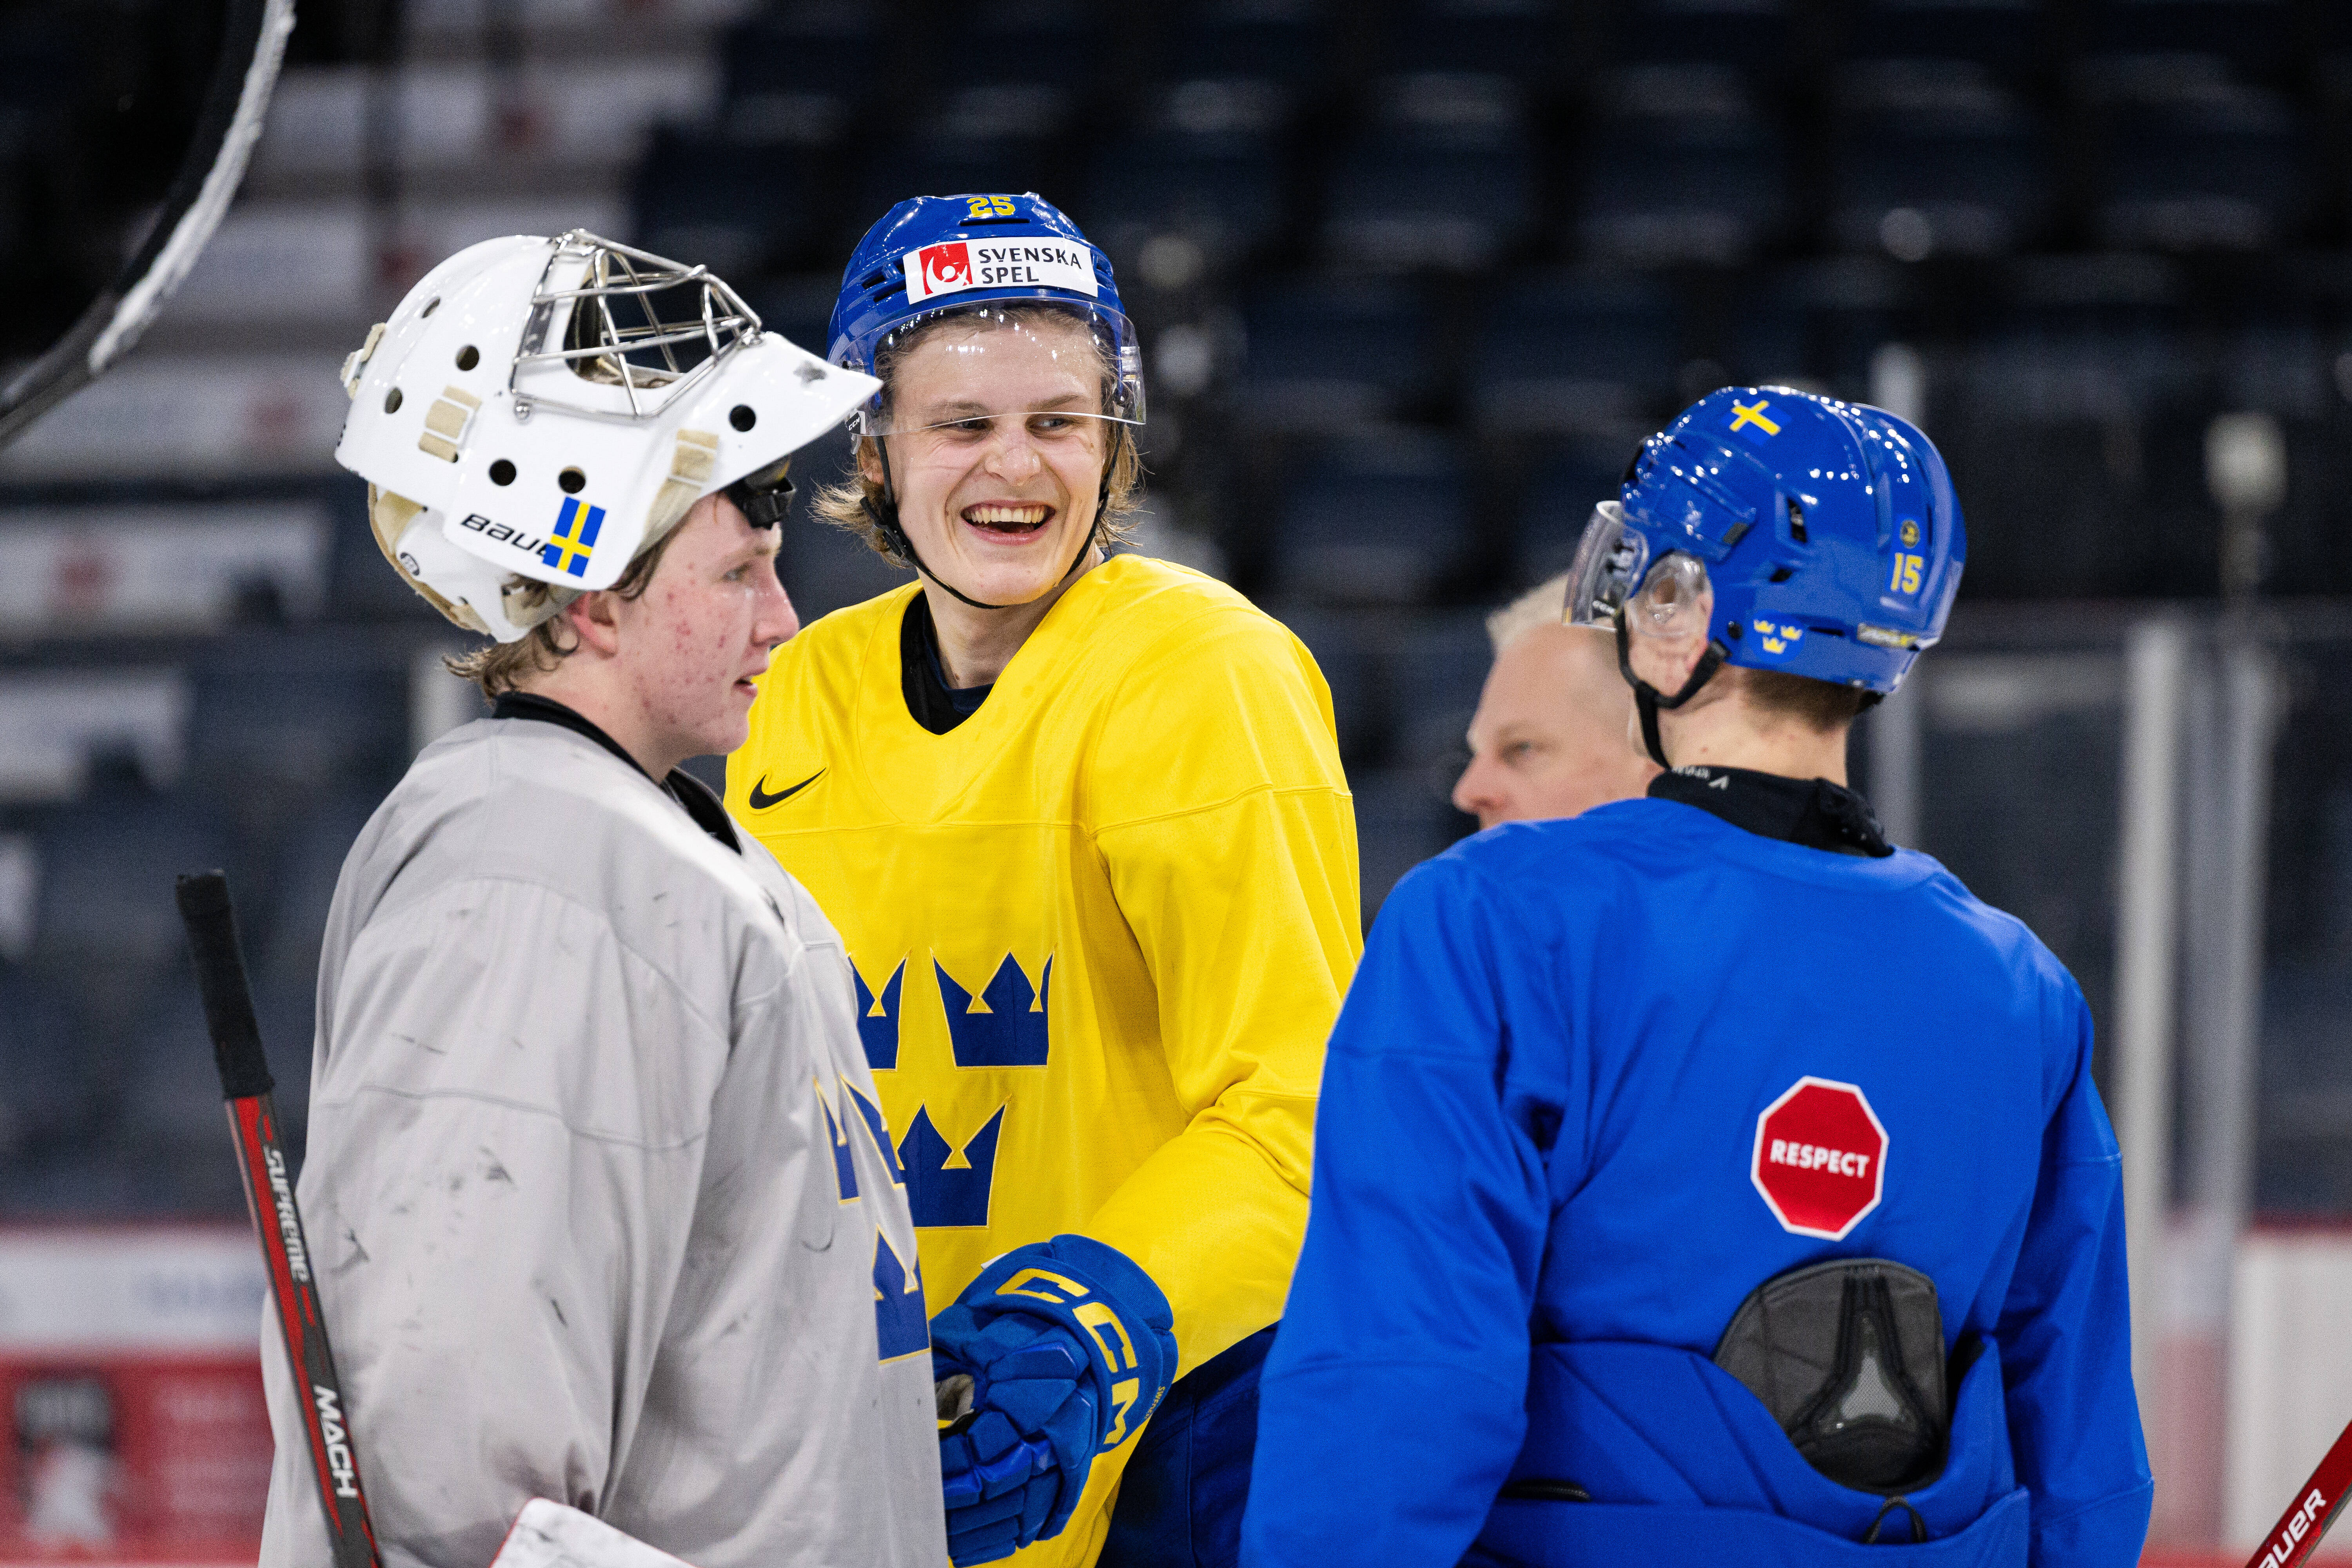 Švédsko Česko: Jak sledovat a streamovat zdarma živý přenos IIHF juniorské hokejové mistrovství – Major League & College Games